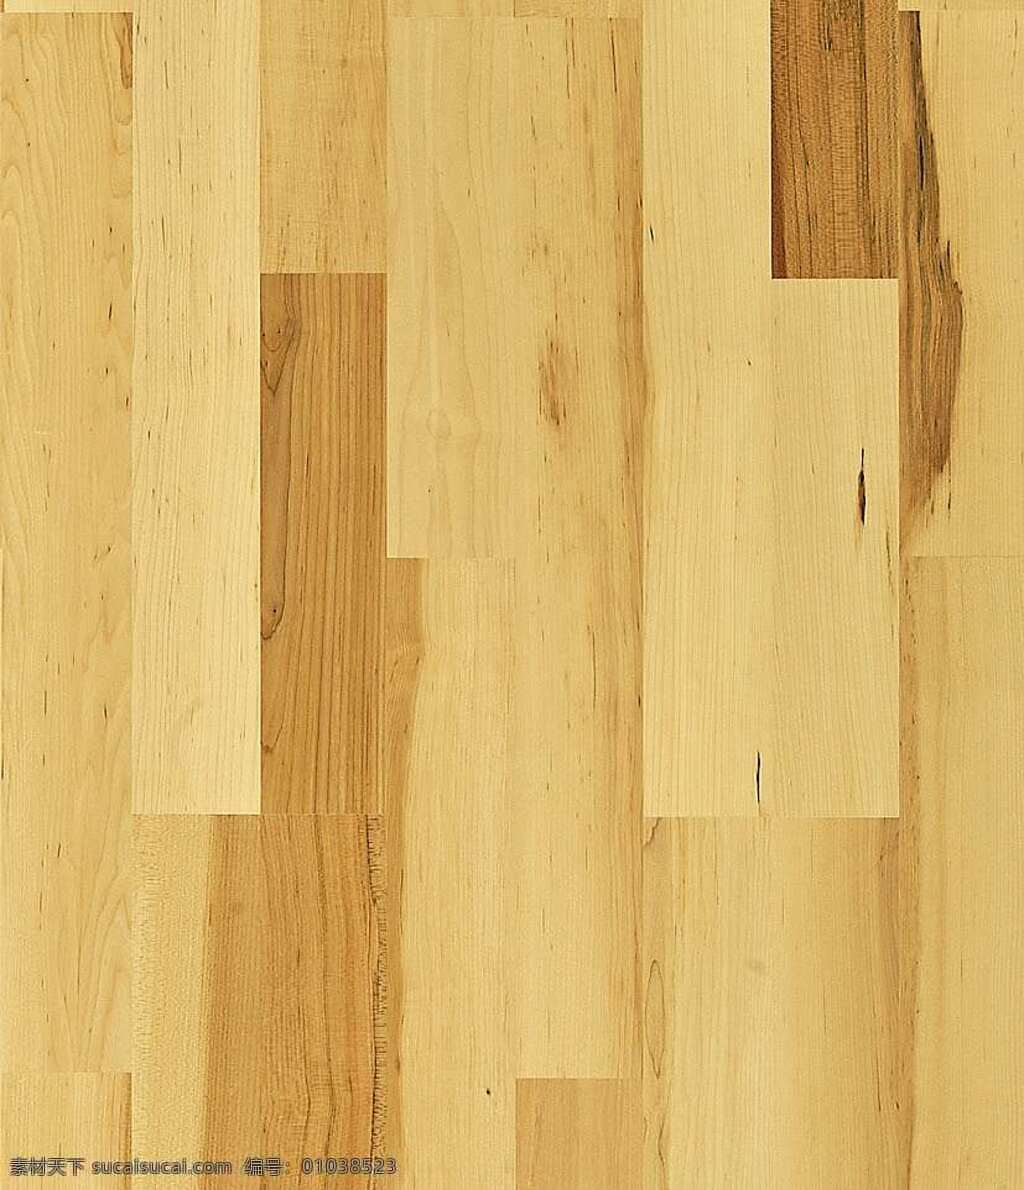 木地板 贴图 装修 效果图 木地板贴图 木地板效果图 室内设计 装修效果图 木地板材质 装饰素材 室内装饰用图